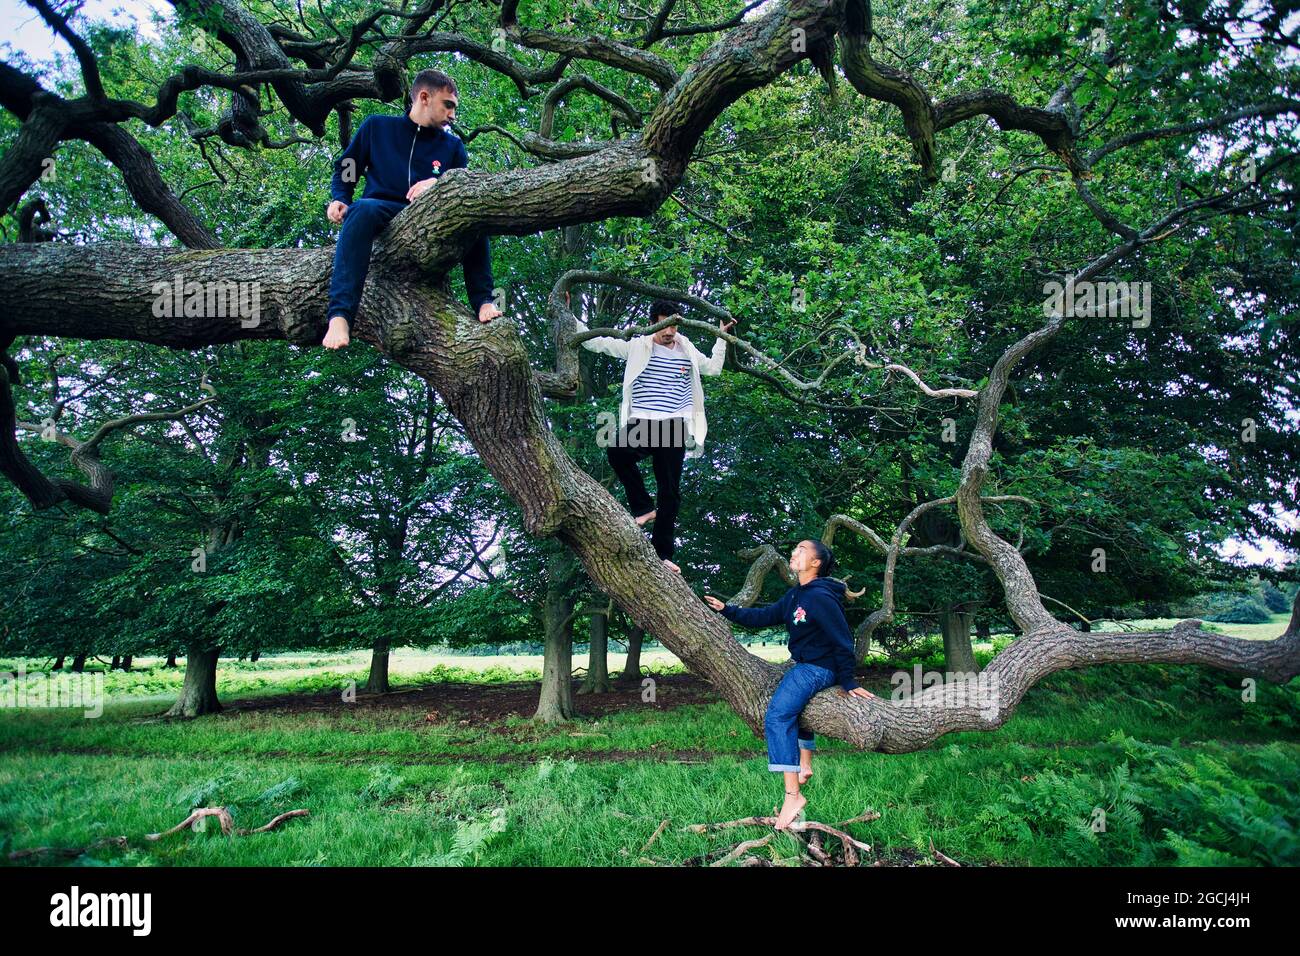 Groupe de jeunes dans le parc grimpant un arbre Banque D'Images